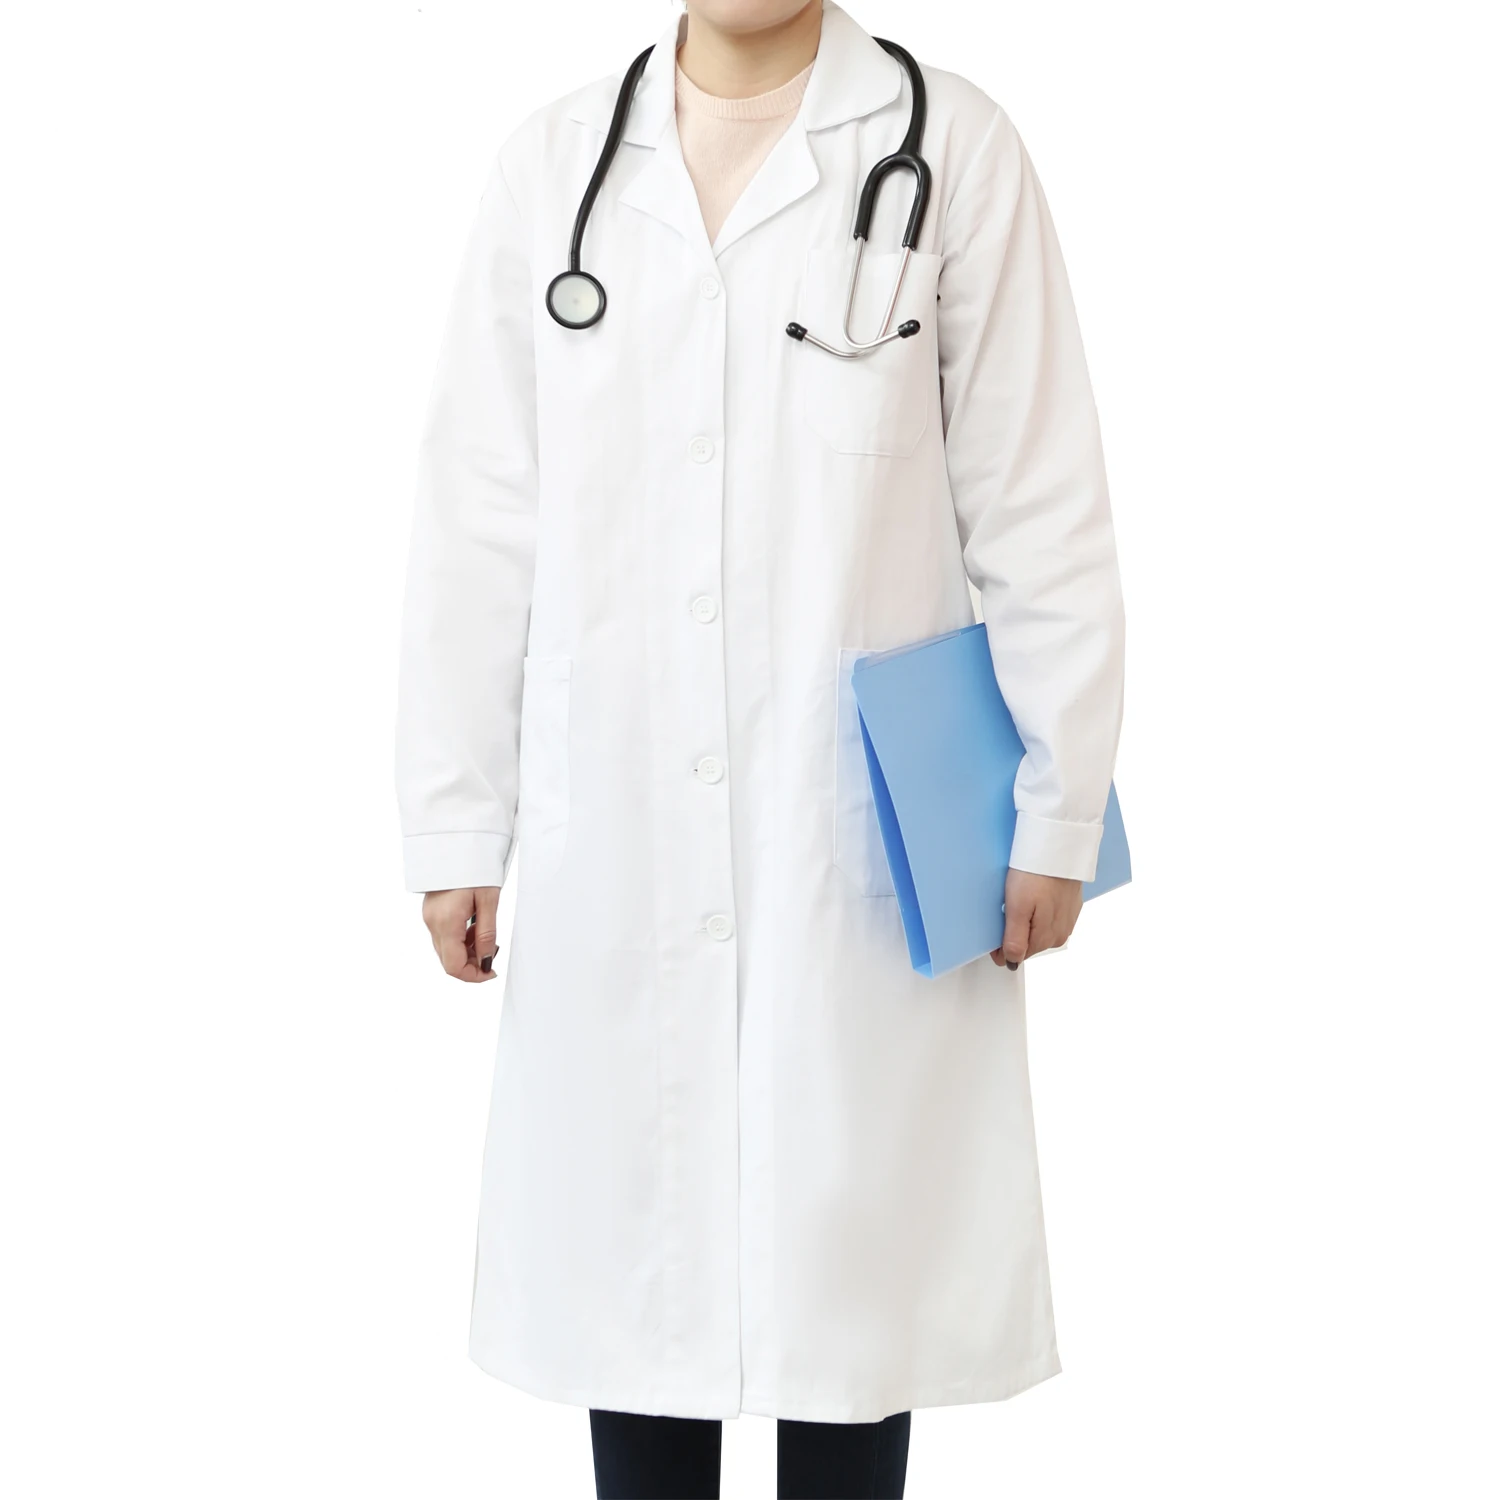 Unisex White Lab Coat Medical Doctor Nursing Hospital Uniform Long Coats Jackets 